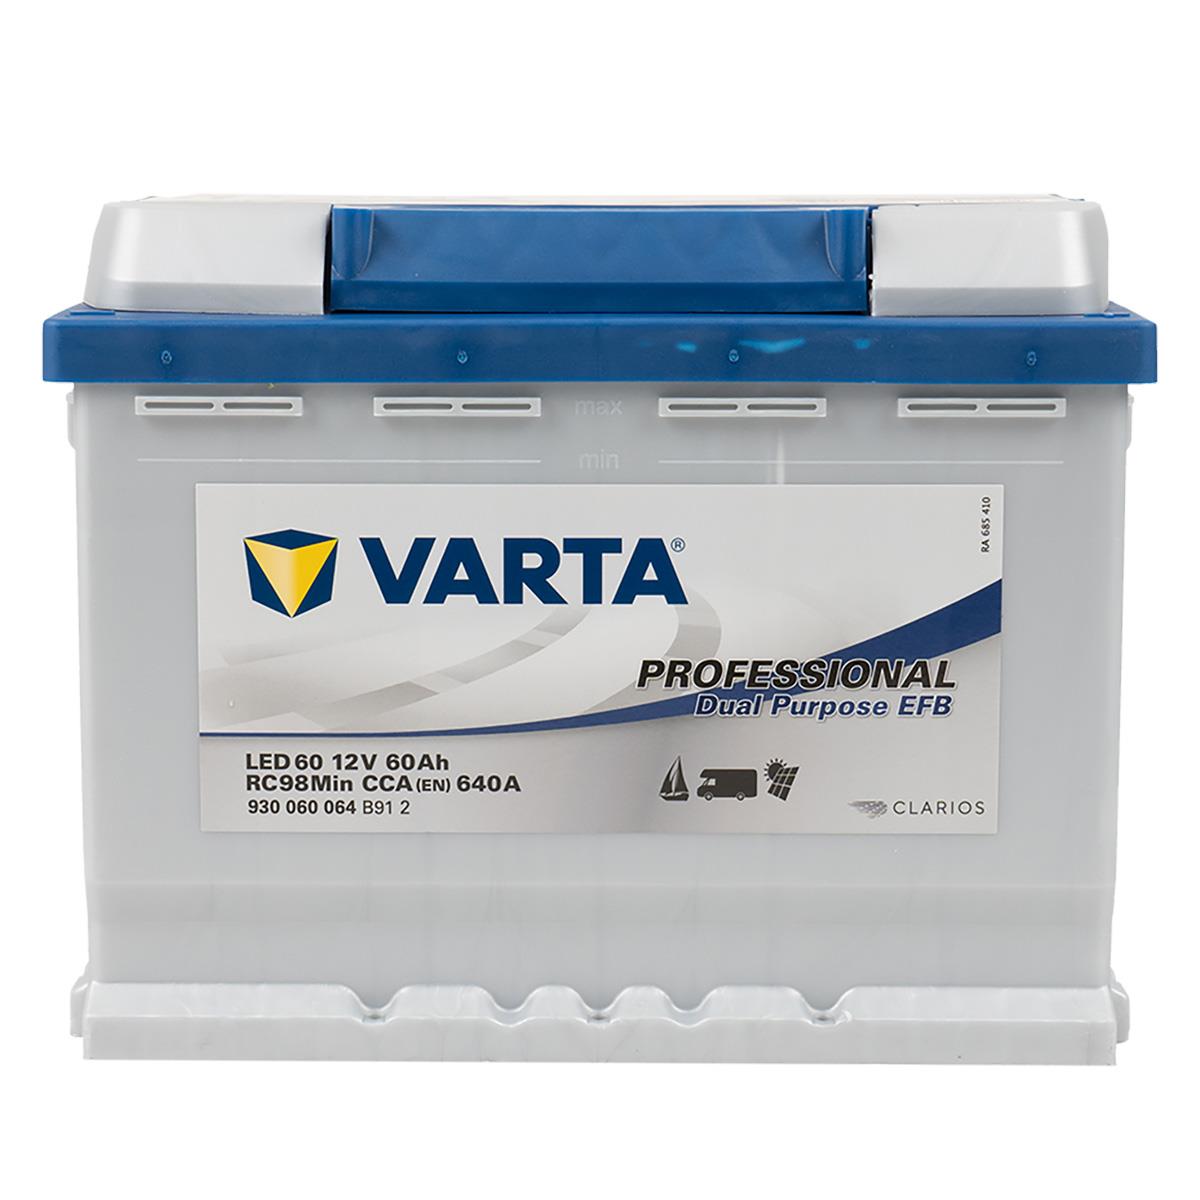 Varta N65 EFB Autobatterie Start-Stop 65Ah